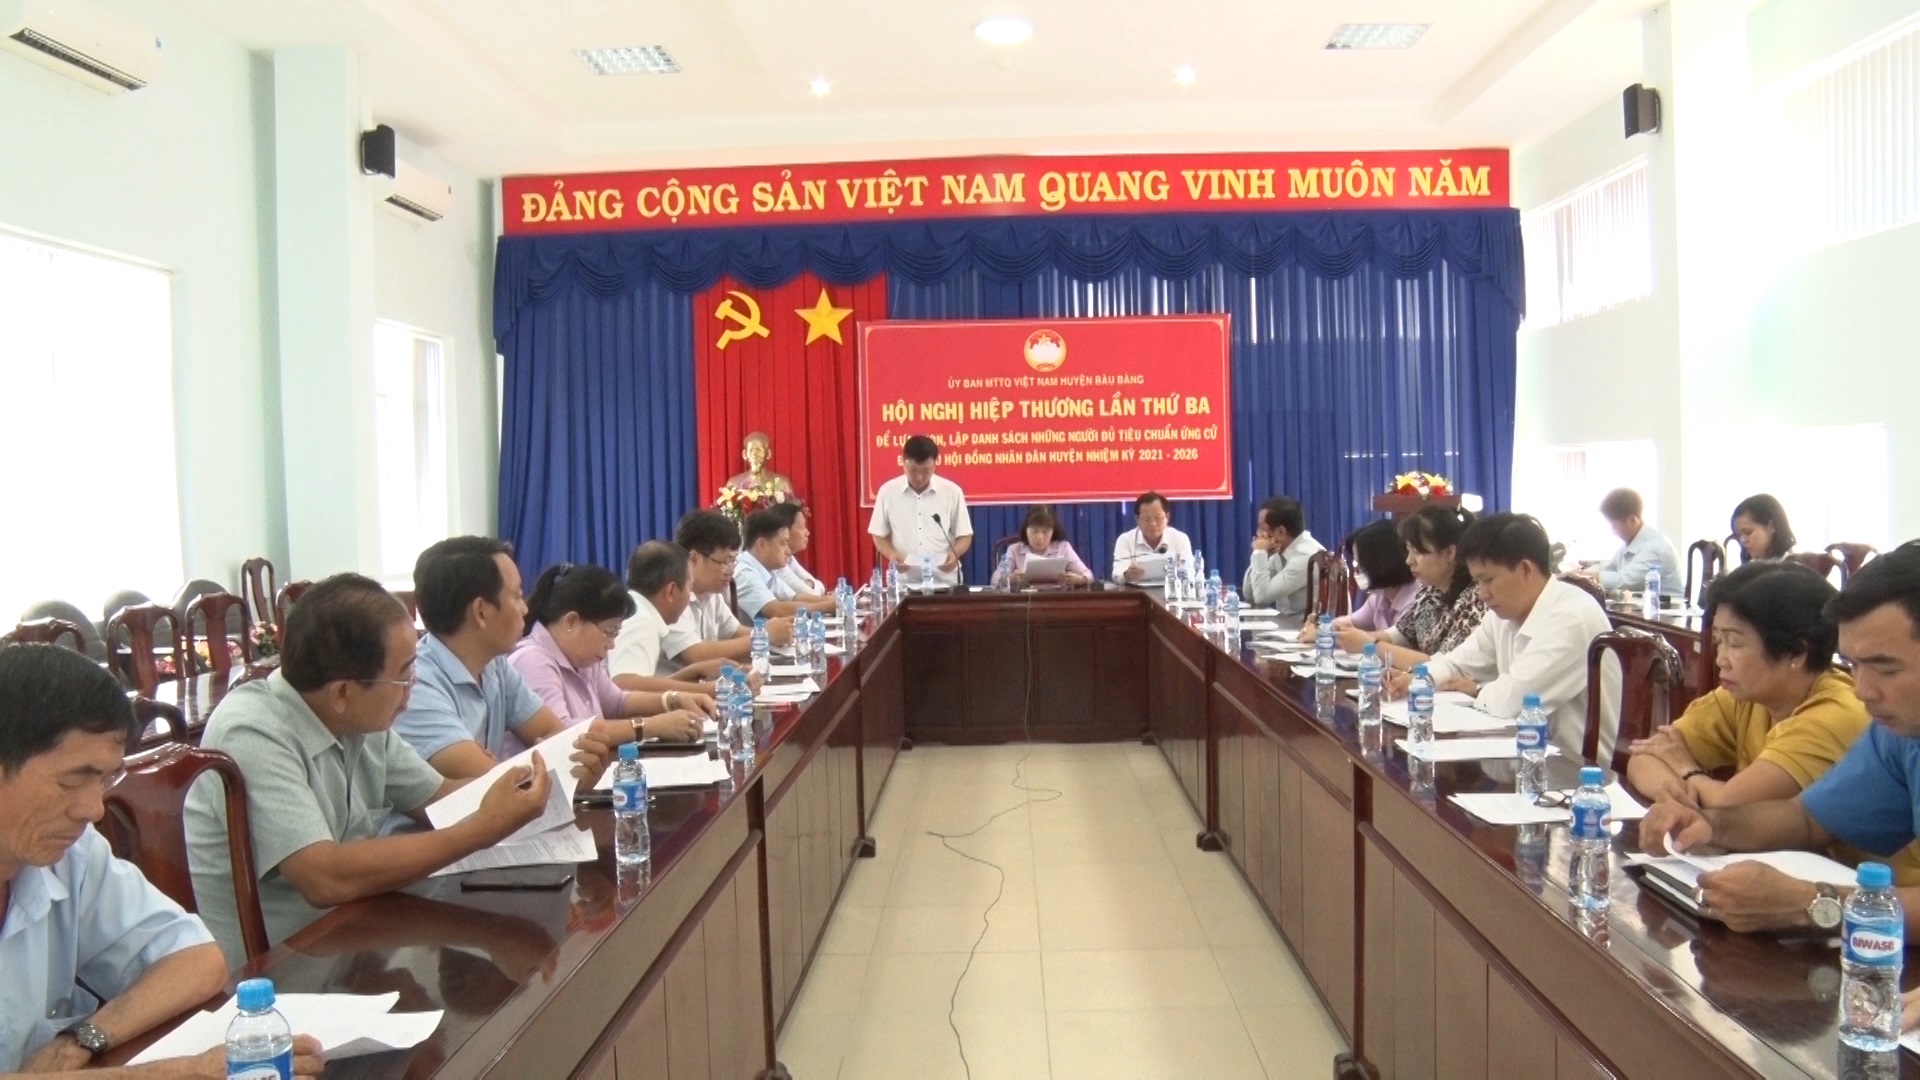 Huyện Bàu Bàng tổ chức hội nghị hiệp thương lần thứ 3 lập danh sách chính thức người ứng cử đại biểu HĐND huyện, nhiệm kỳ 2021 – 2026